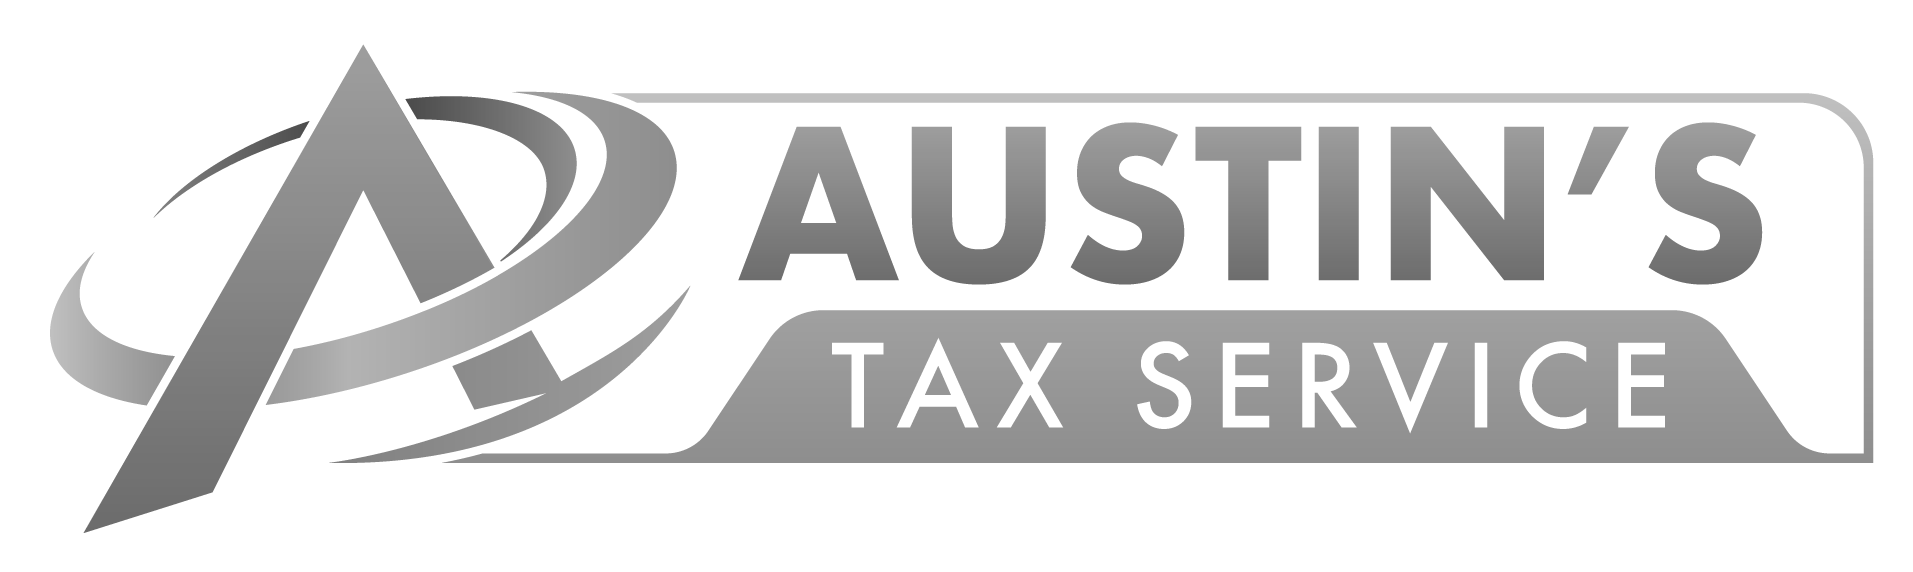 Austin's Tax Service